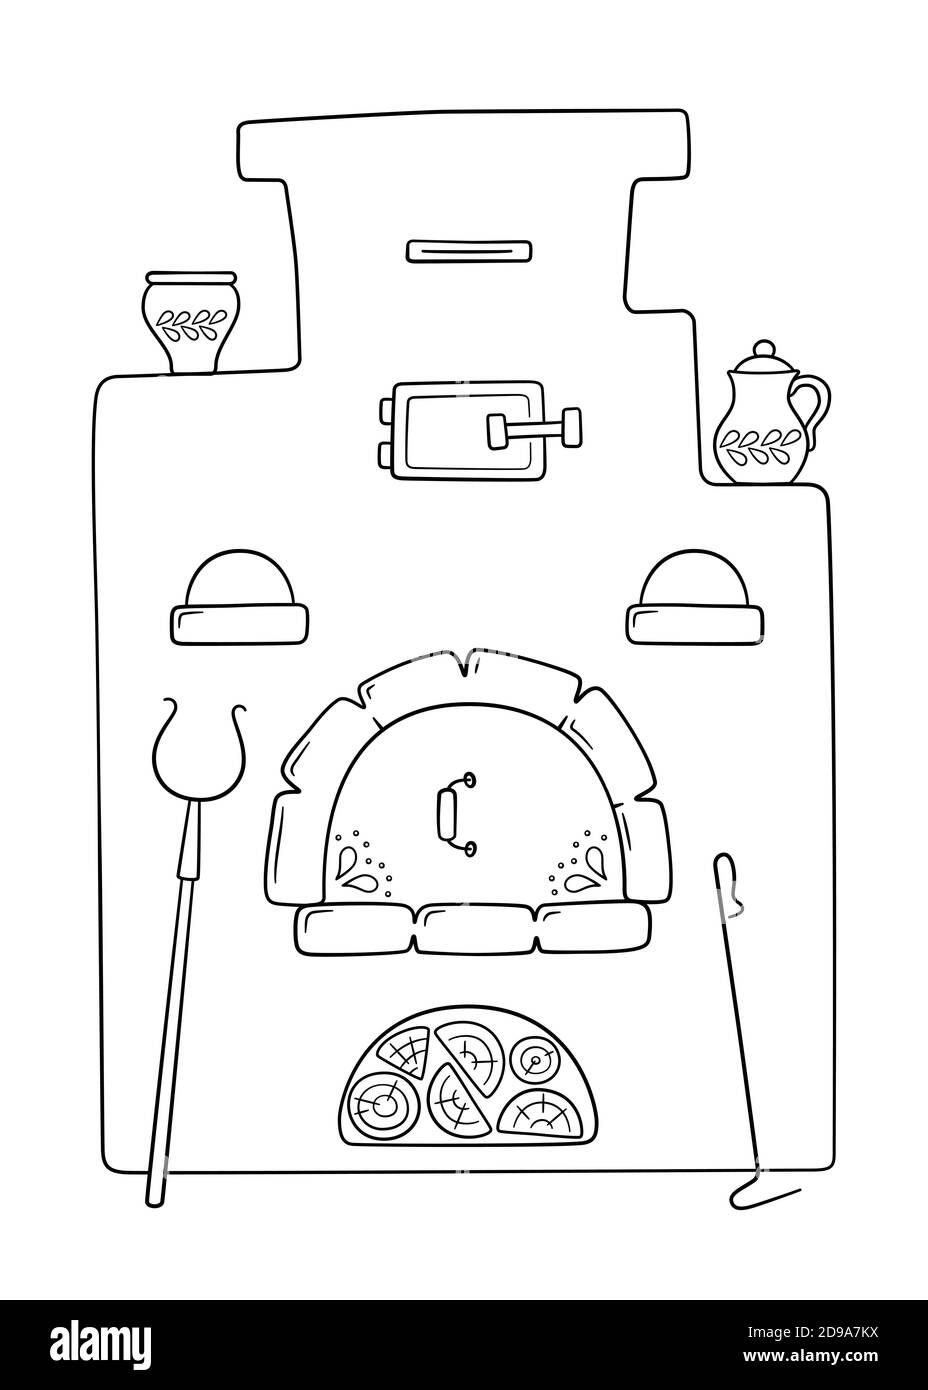 Handgezeichneter traditioneller russischer Ofen mit Griff, Töpfen, Poker und Brennholz. Vektorgrafik Stock Vektor